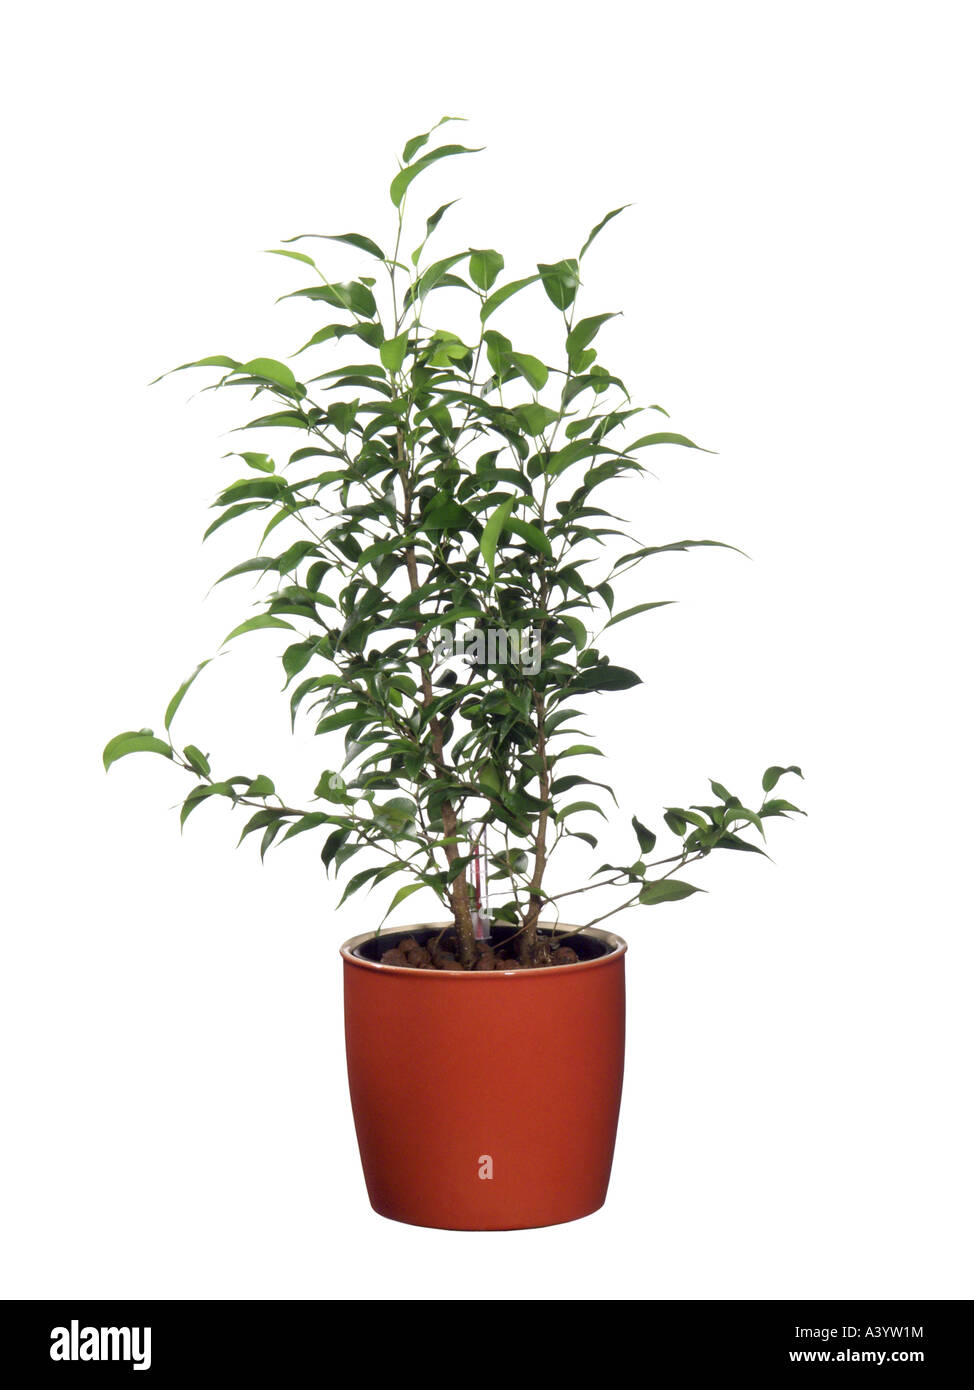 Abb., tropische Laurel (Ficus Benjamina, Ficus Benjamini), Hydrokultur Pflanzen  Weinen Stockfotografie - Alamy